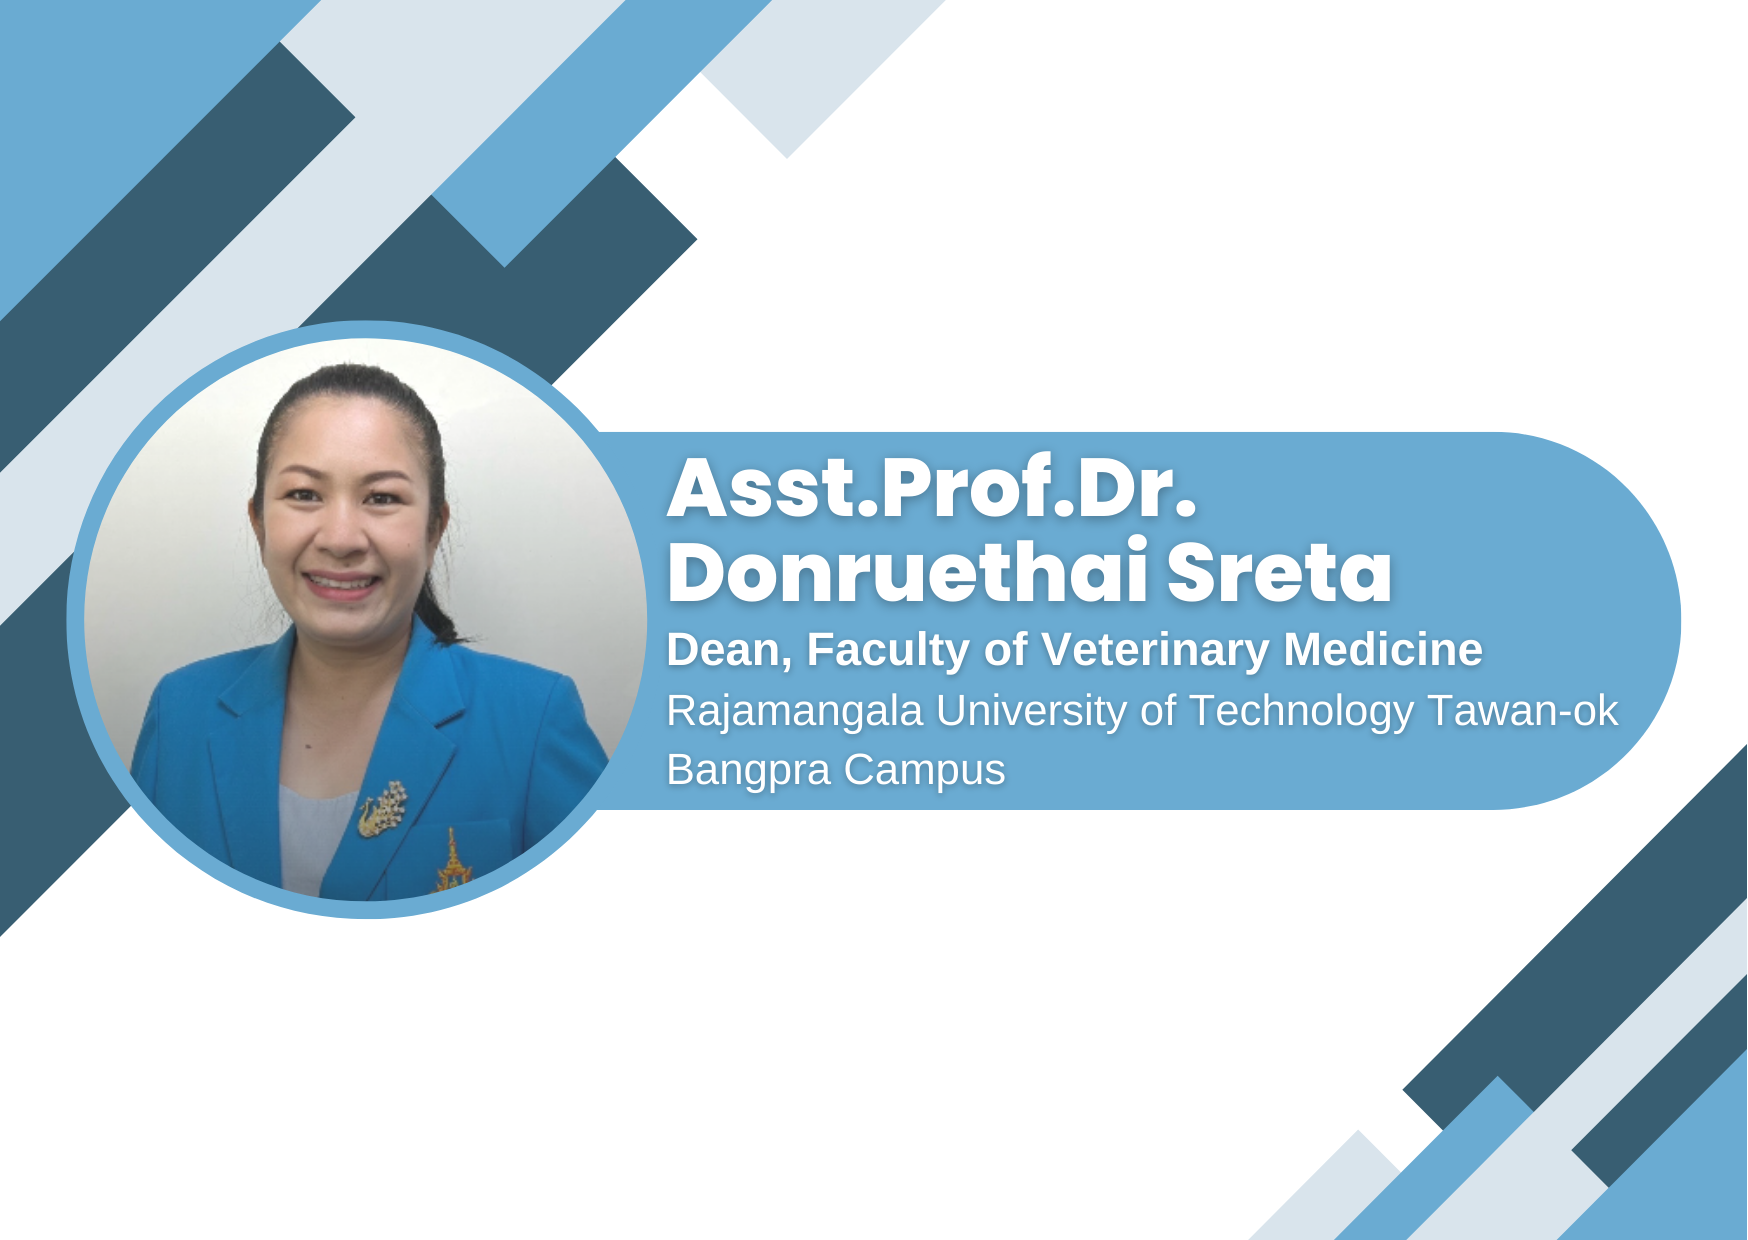 Asst.Prof.Dr. Donruethai Sreta